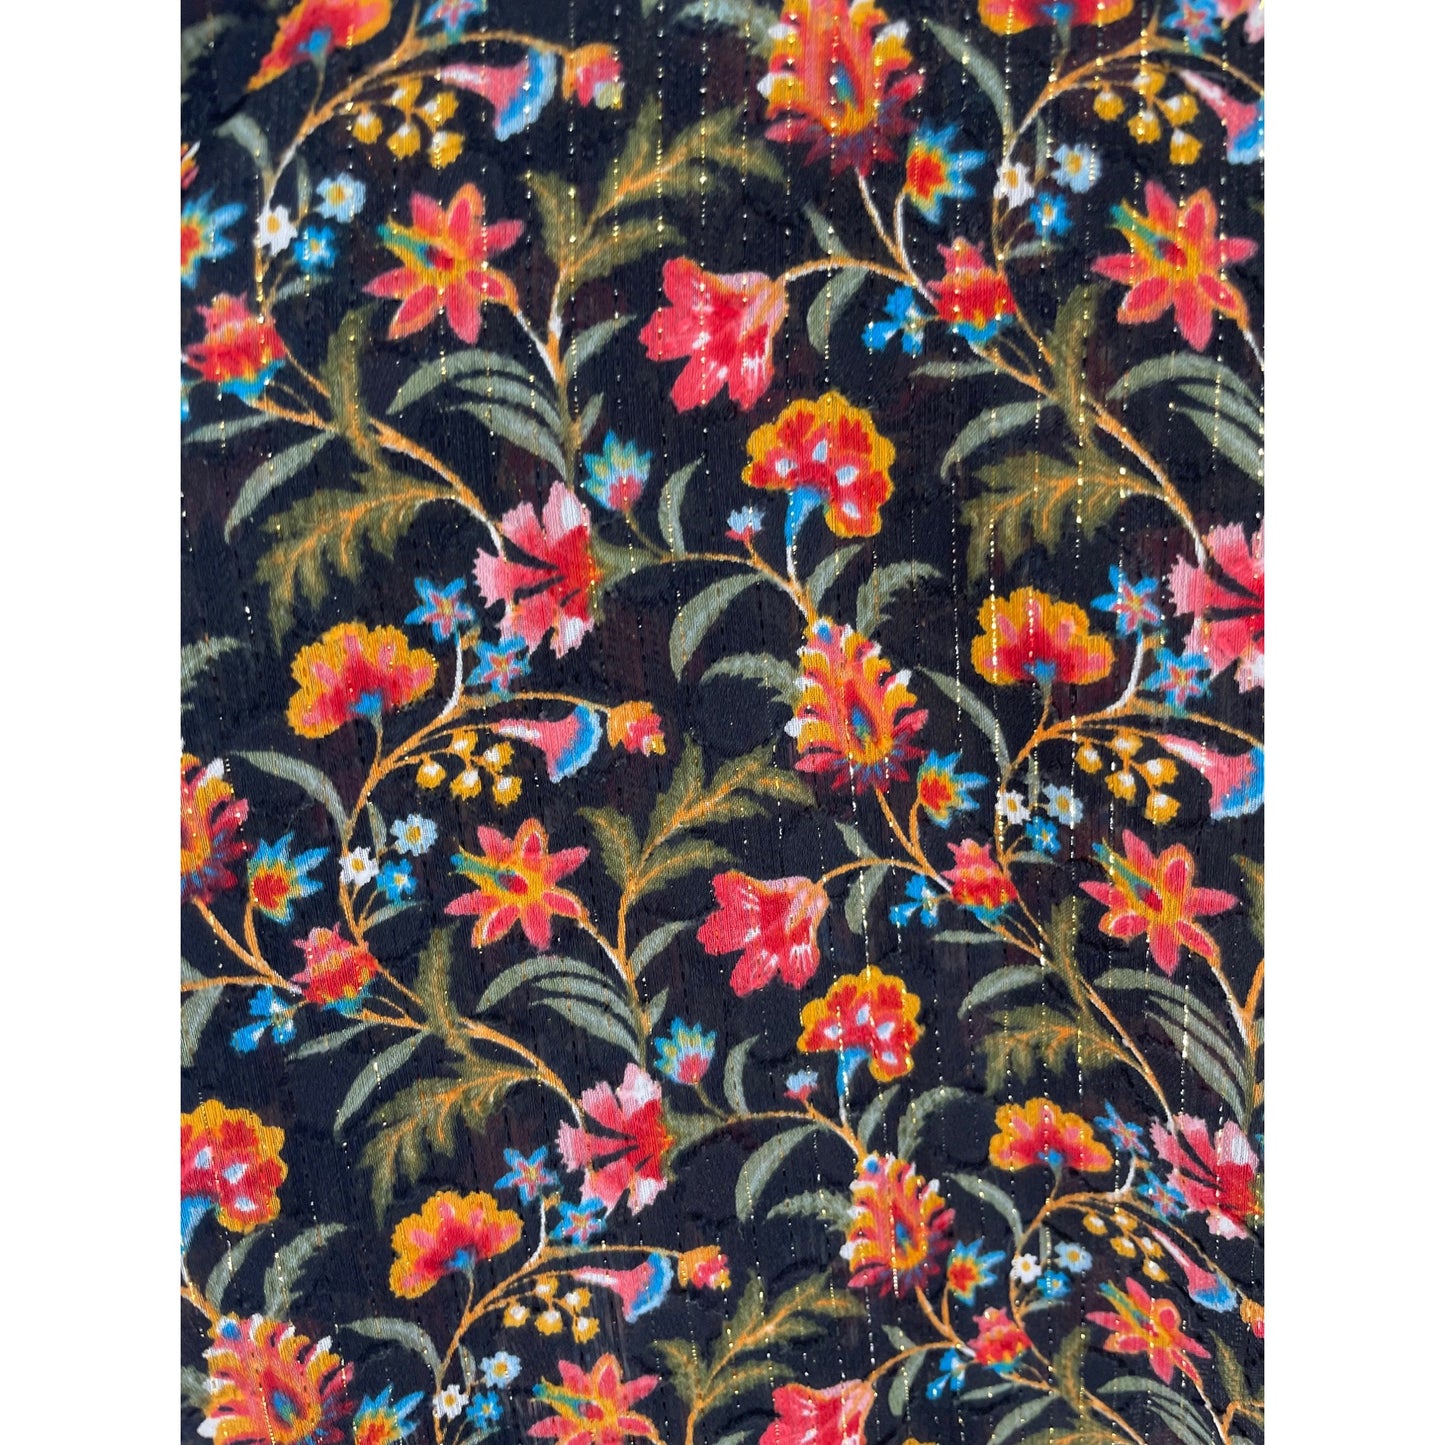 NWOT LOFT Women's Size 18 Plus Multi-Colored Floral Top W/ Neck Tie